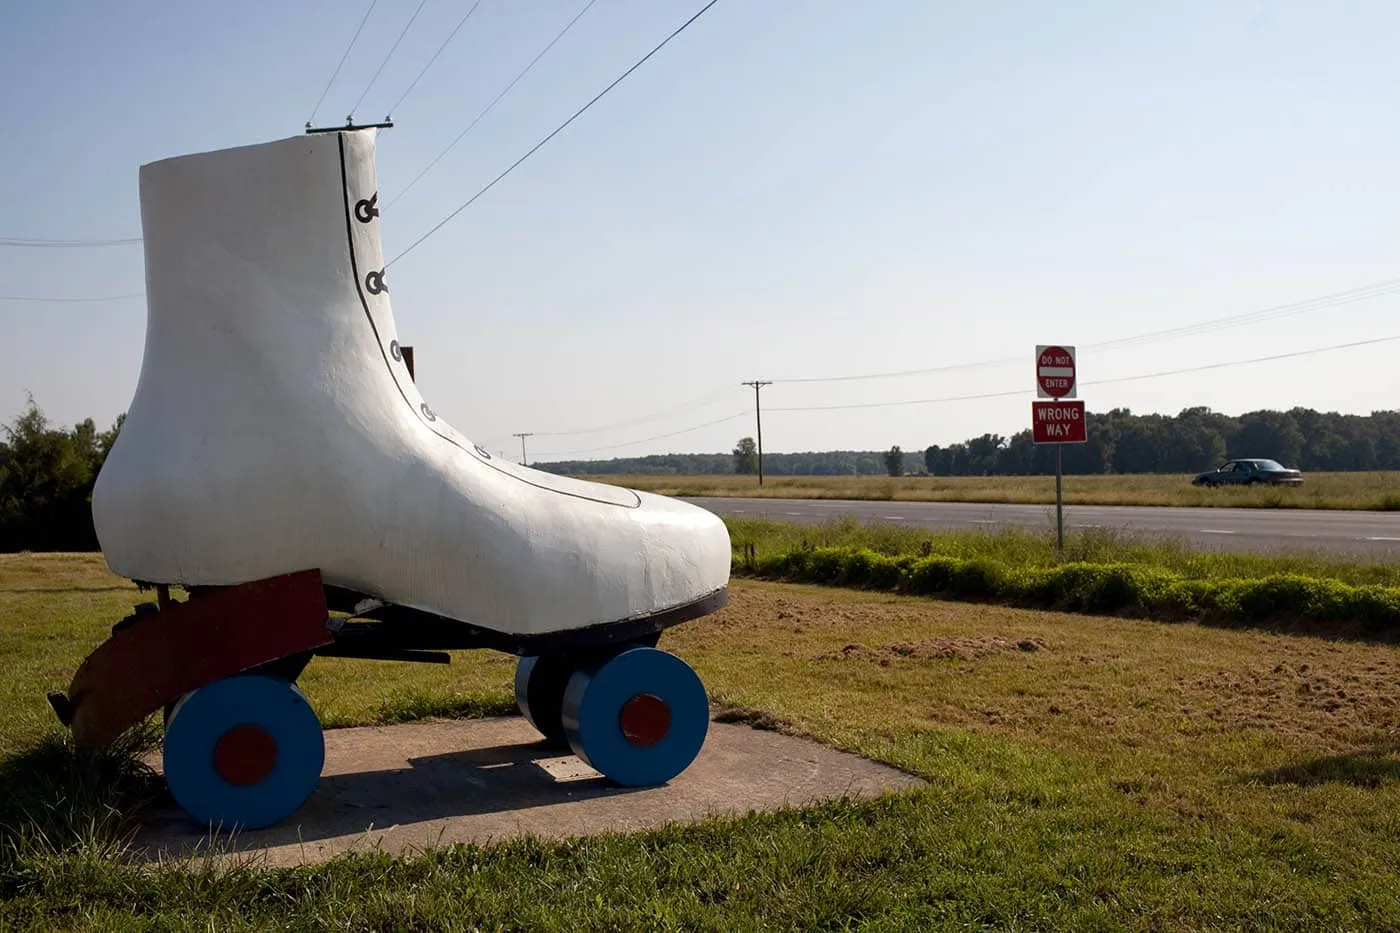 Giant Roller Skate in Bealeton, Virginia - Roadside Attractions in Virginia